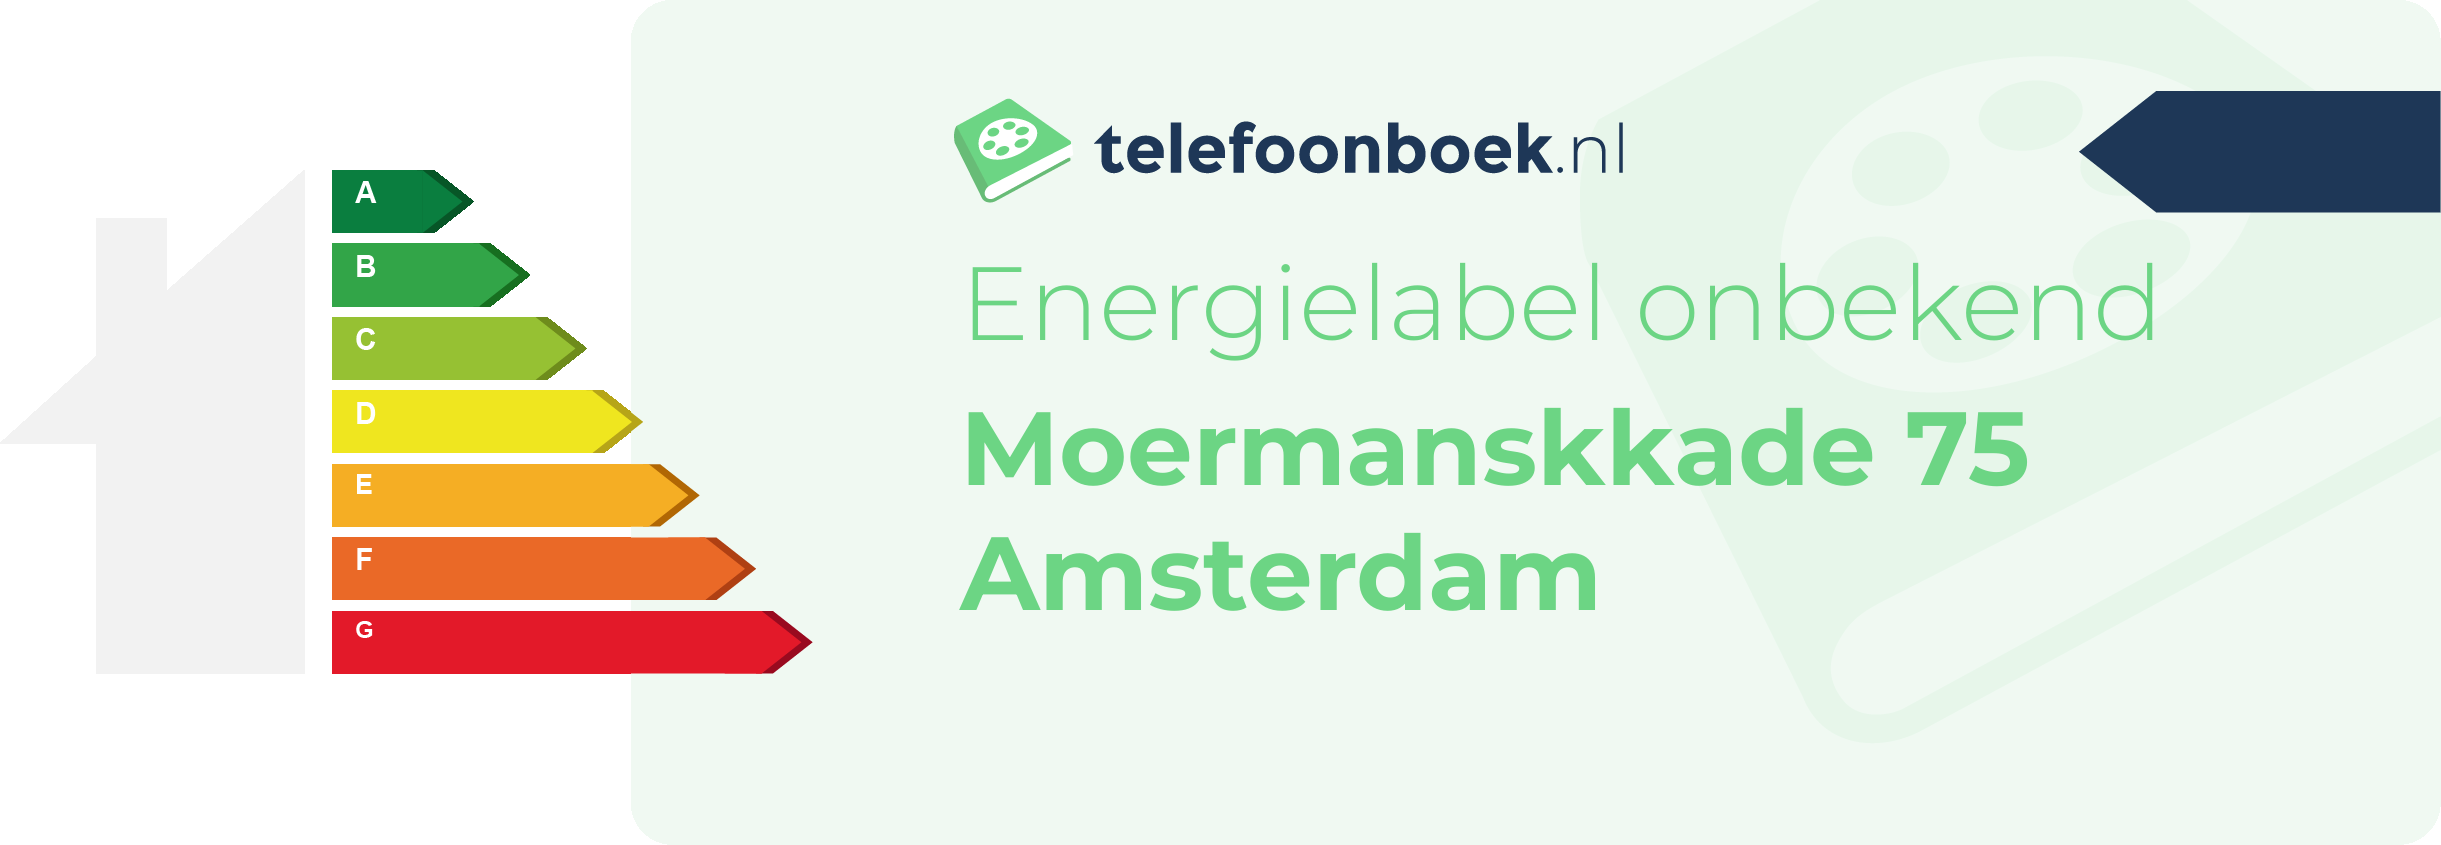 Energielabel Moermanskkade 75 Amsterdam